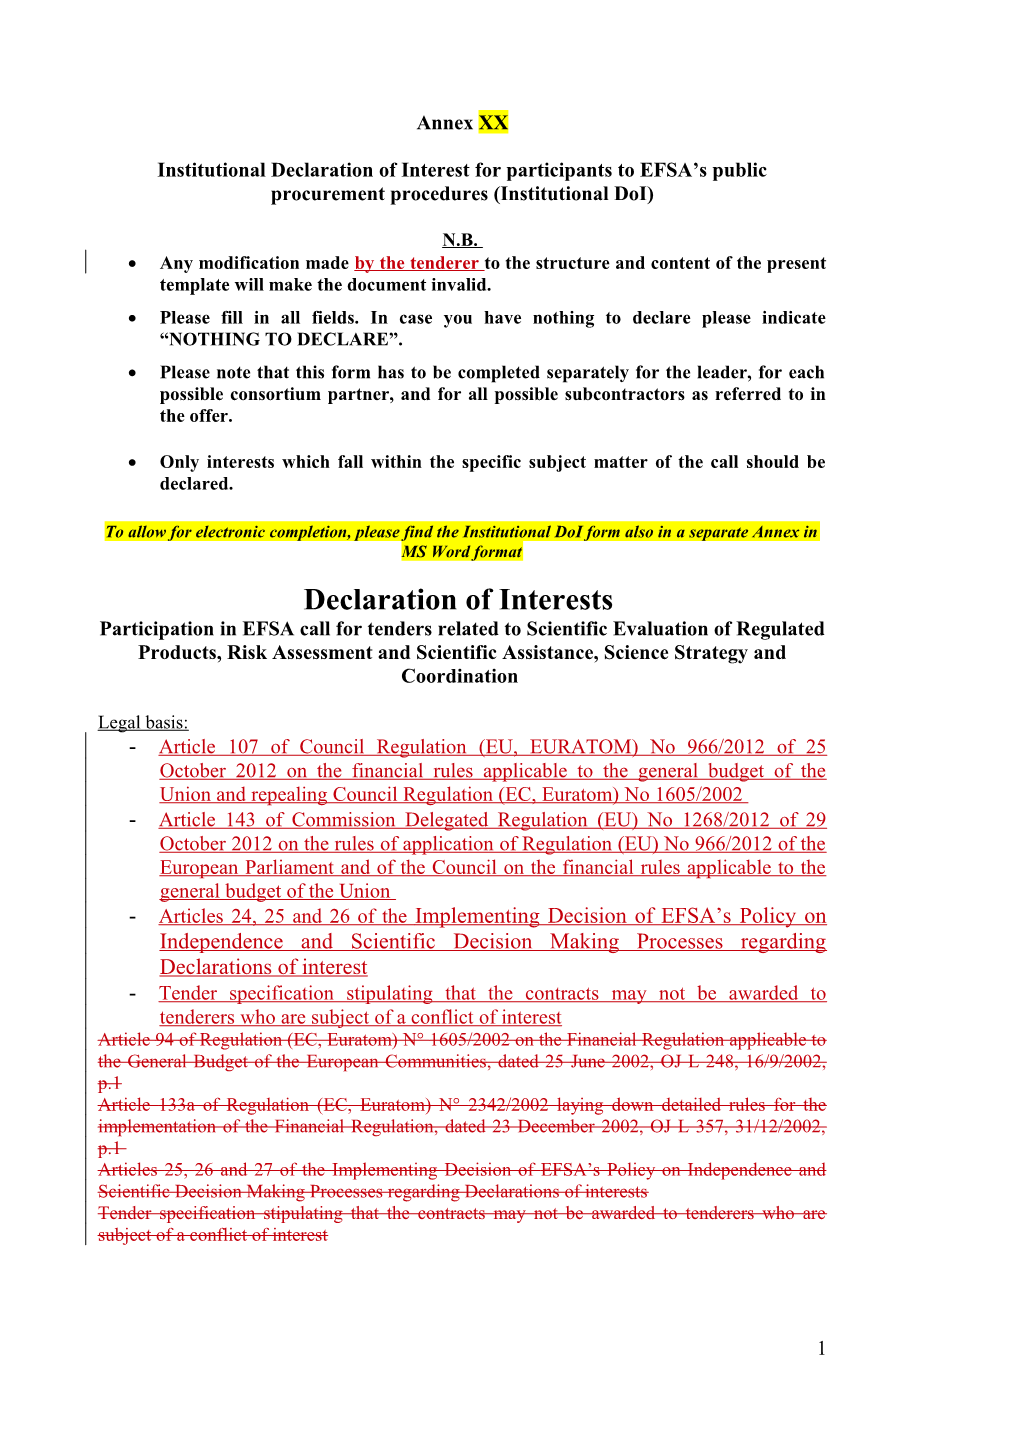 Institutional Declaration of Interest for Participants to EFSA S Public Procurement Procedures